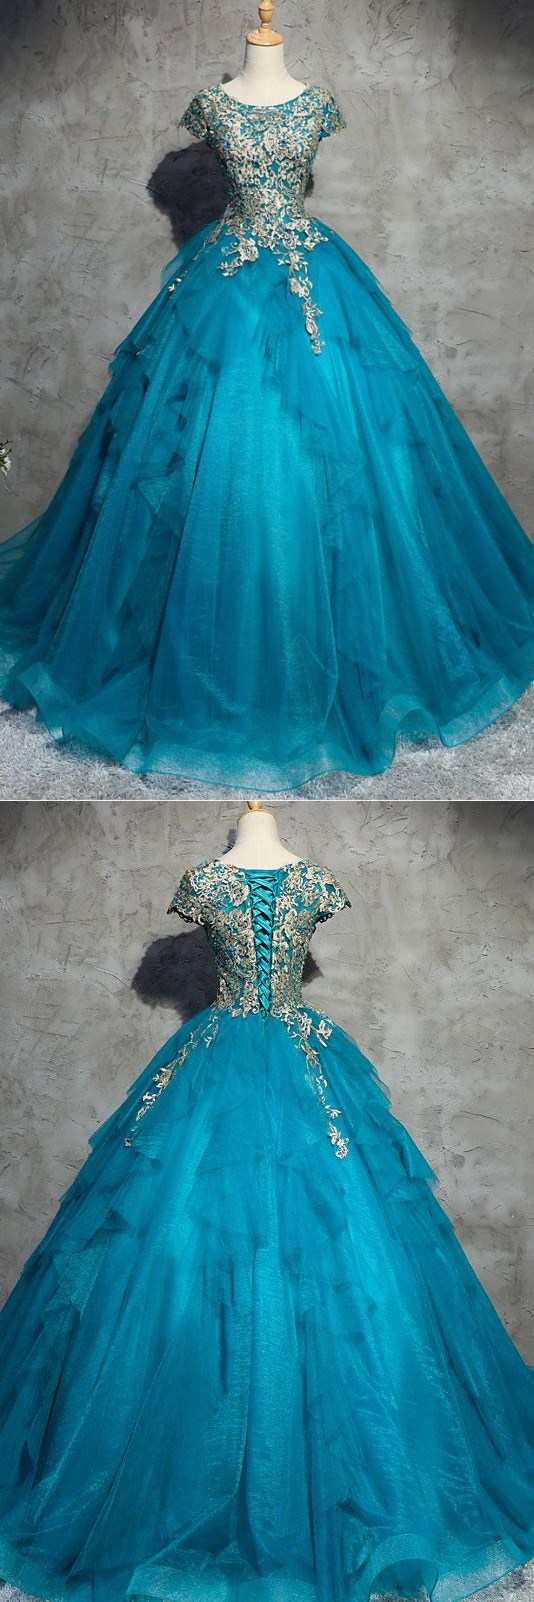 Unique Blue Round Neck Tulle Applique Long Prom Dress, Blue Evening Dress